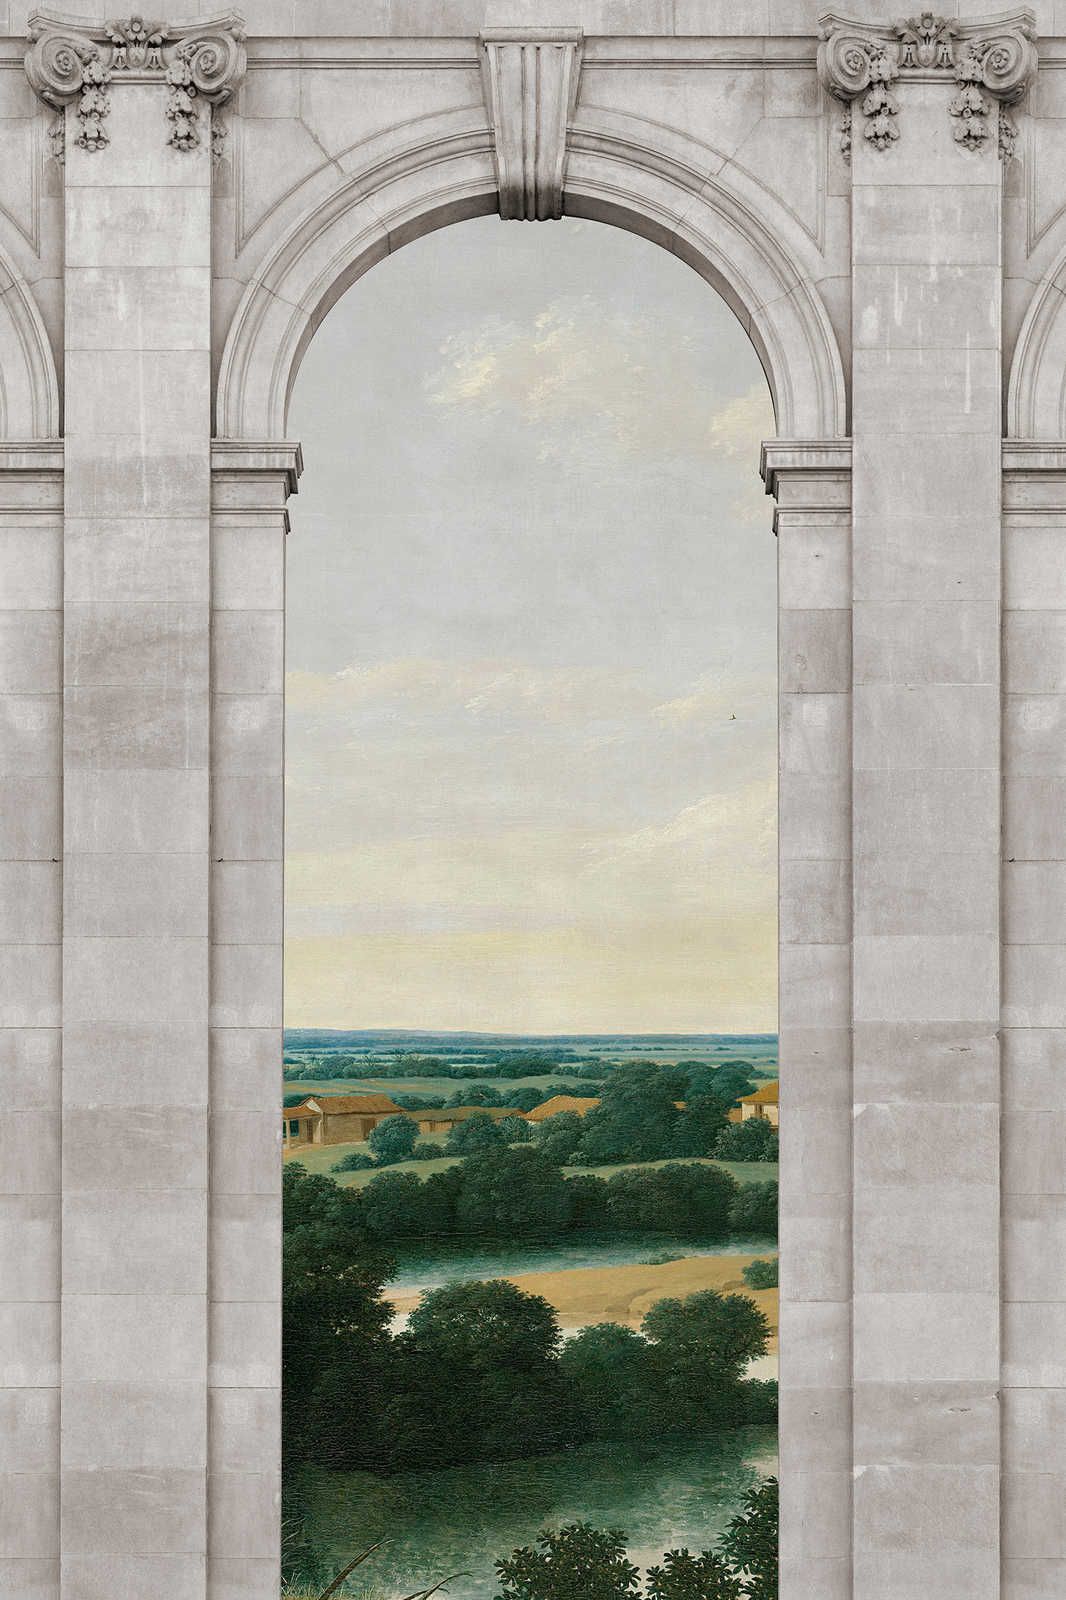             Castello 2 - Canvas Schilderij Boog & Uitzicht Landschap - 0.90 m x 0.60 m
        